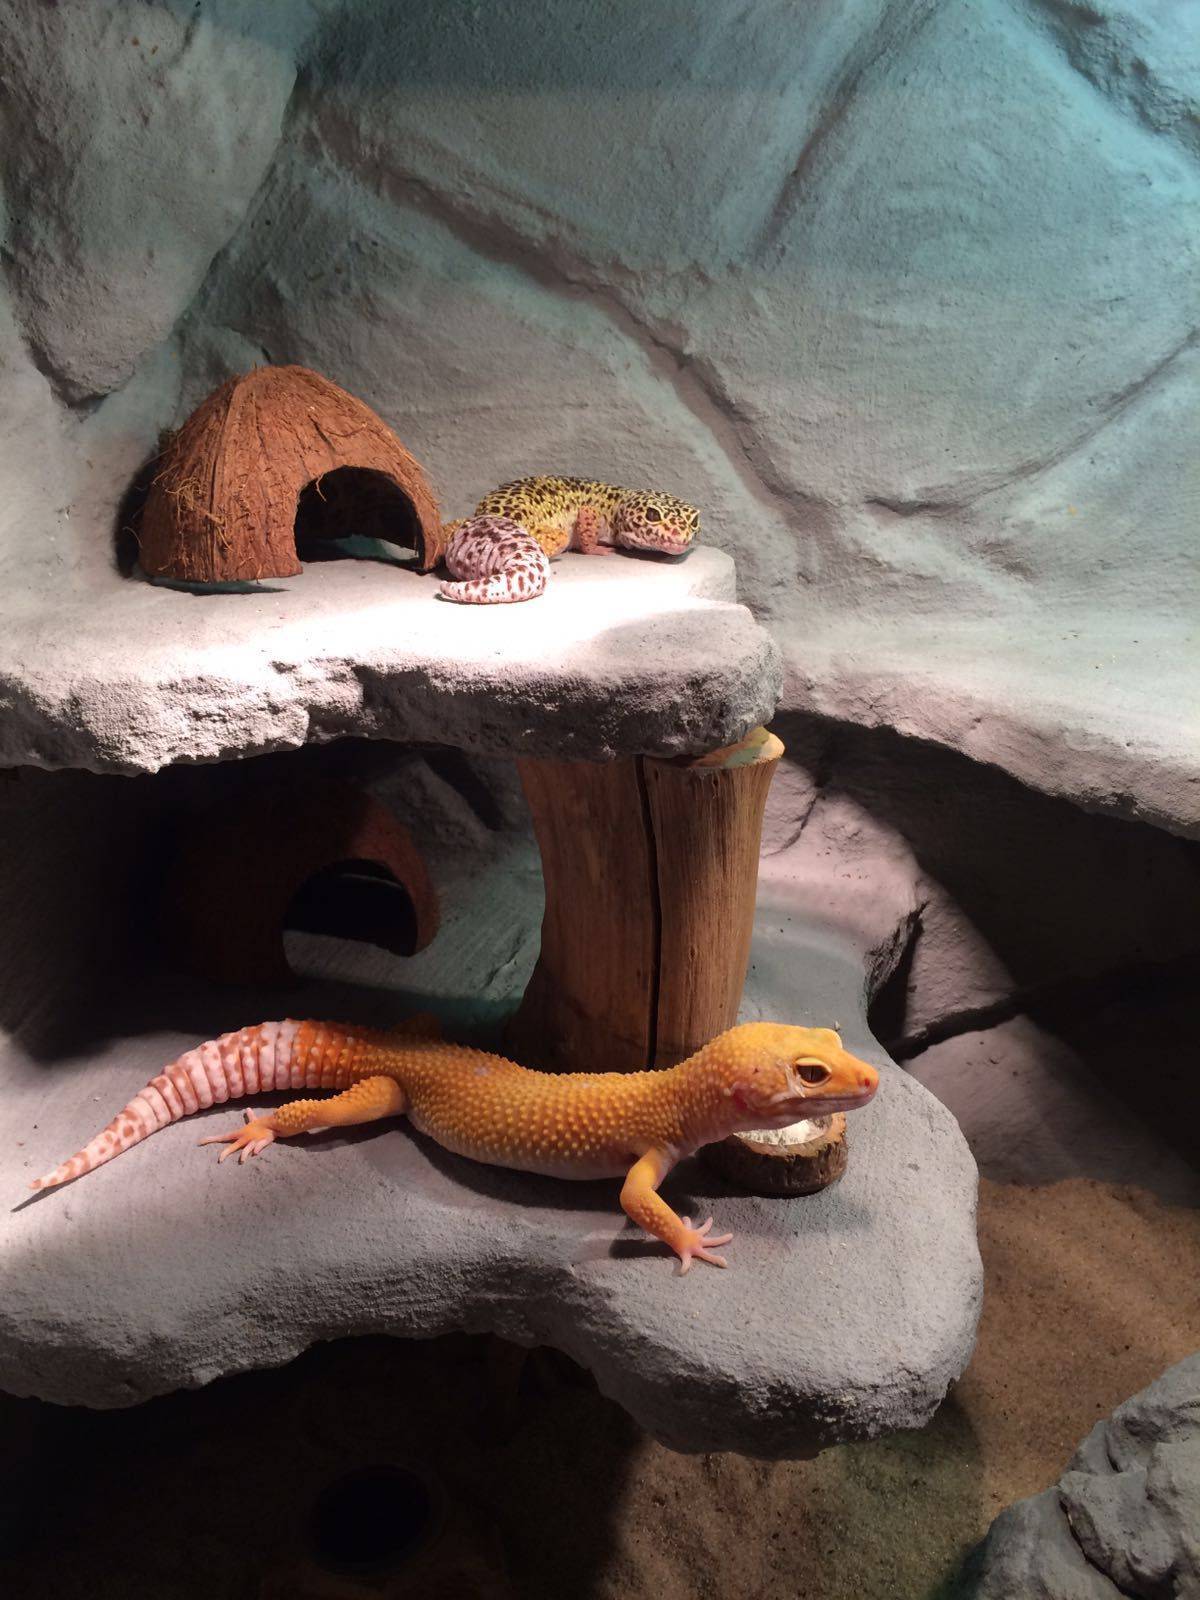 Геккон (фото): ящерица с фантастическими способностями